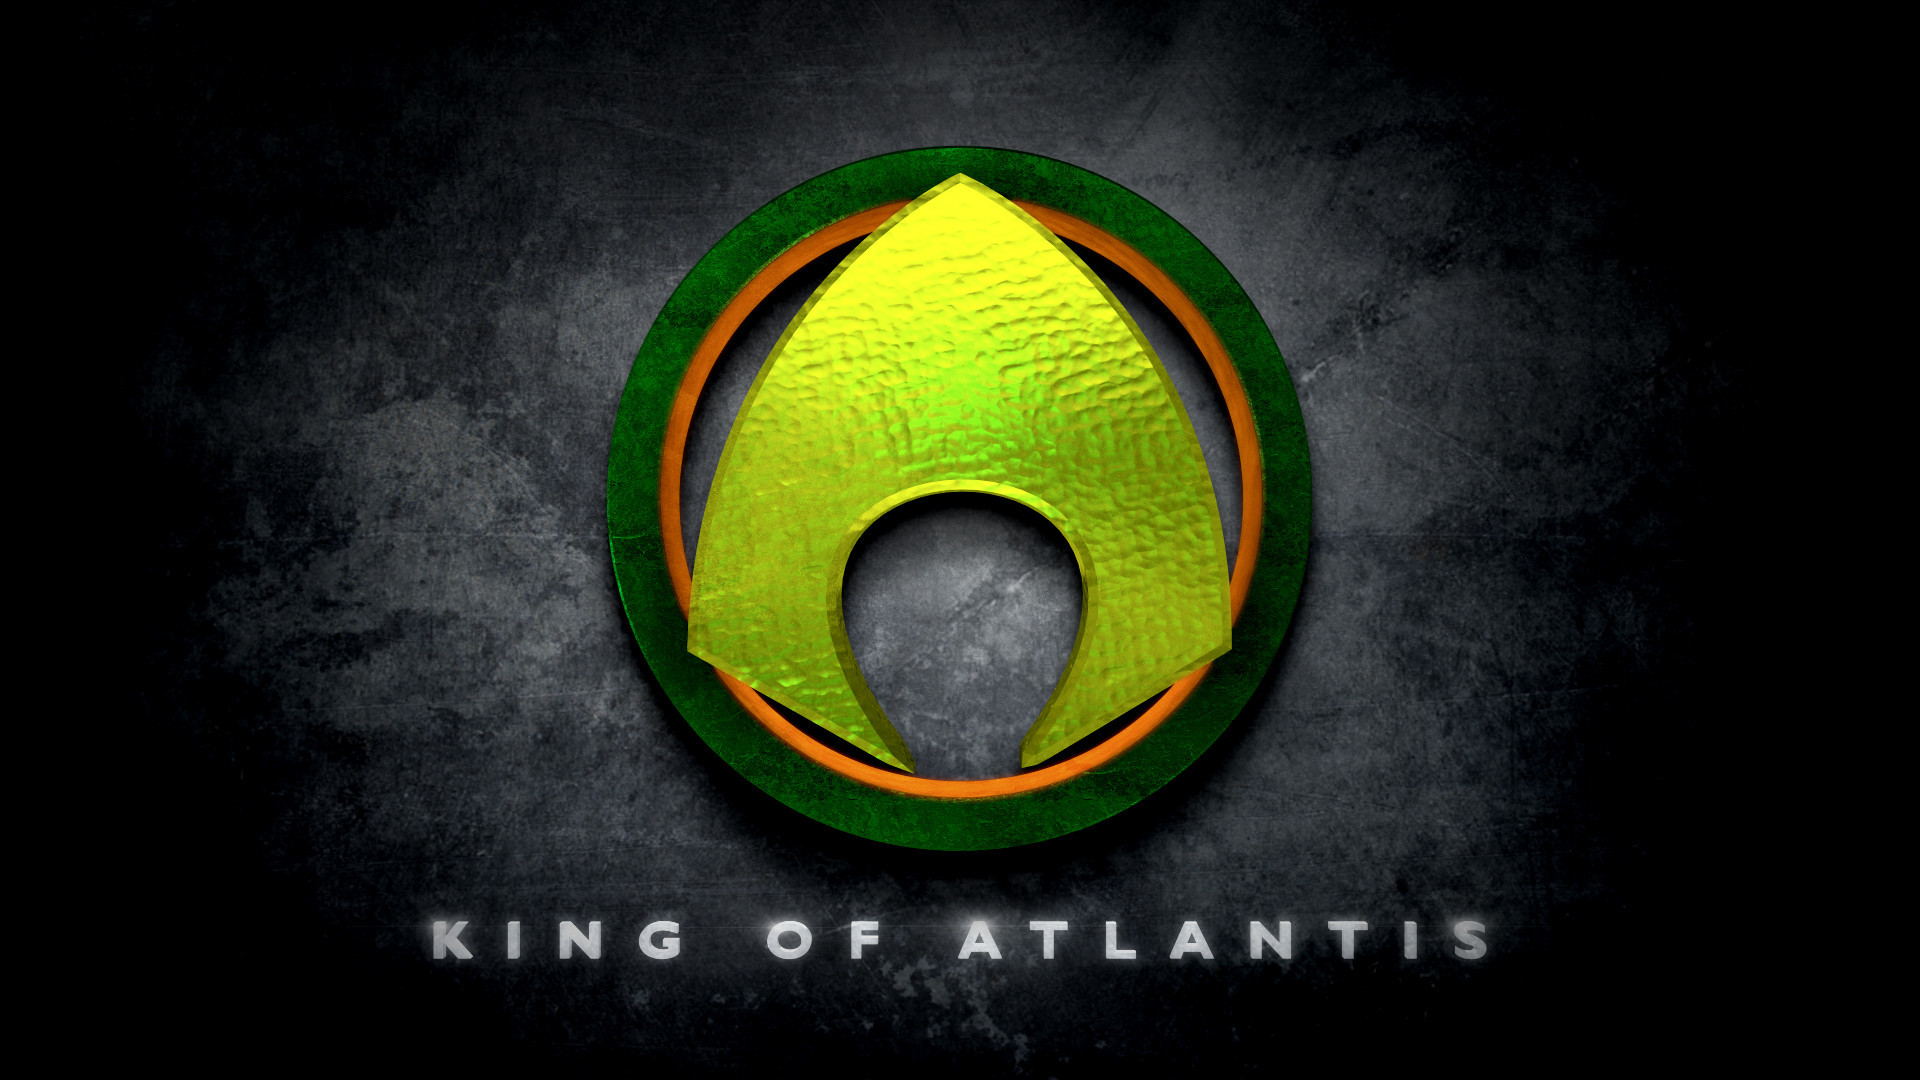 King of Atlantis logo by Beloeil-Jones